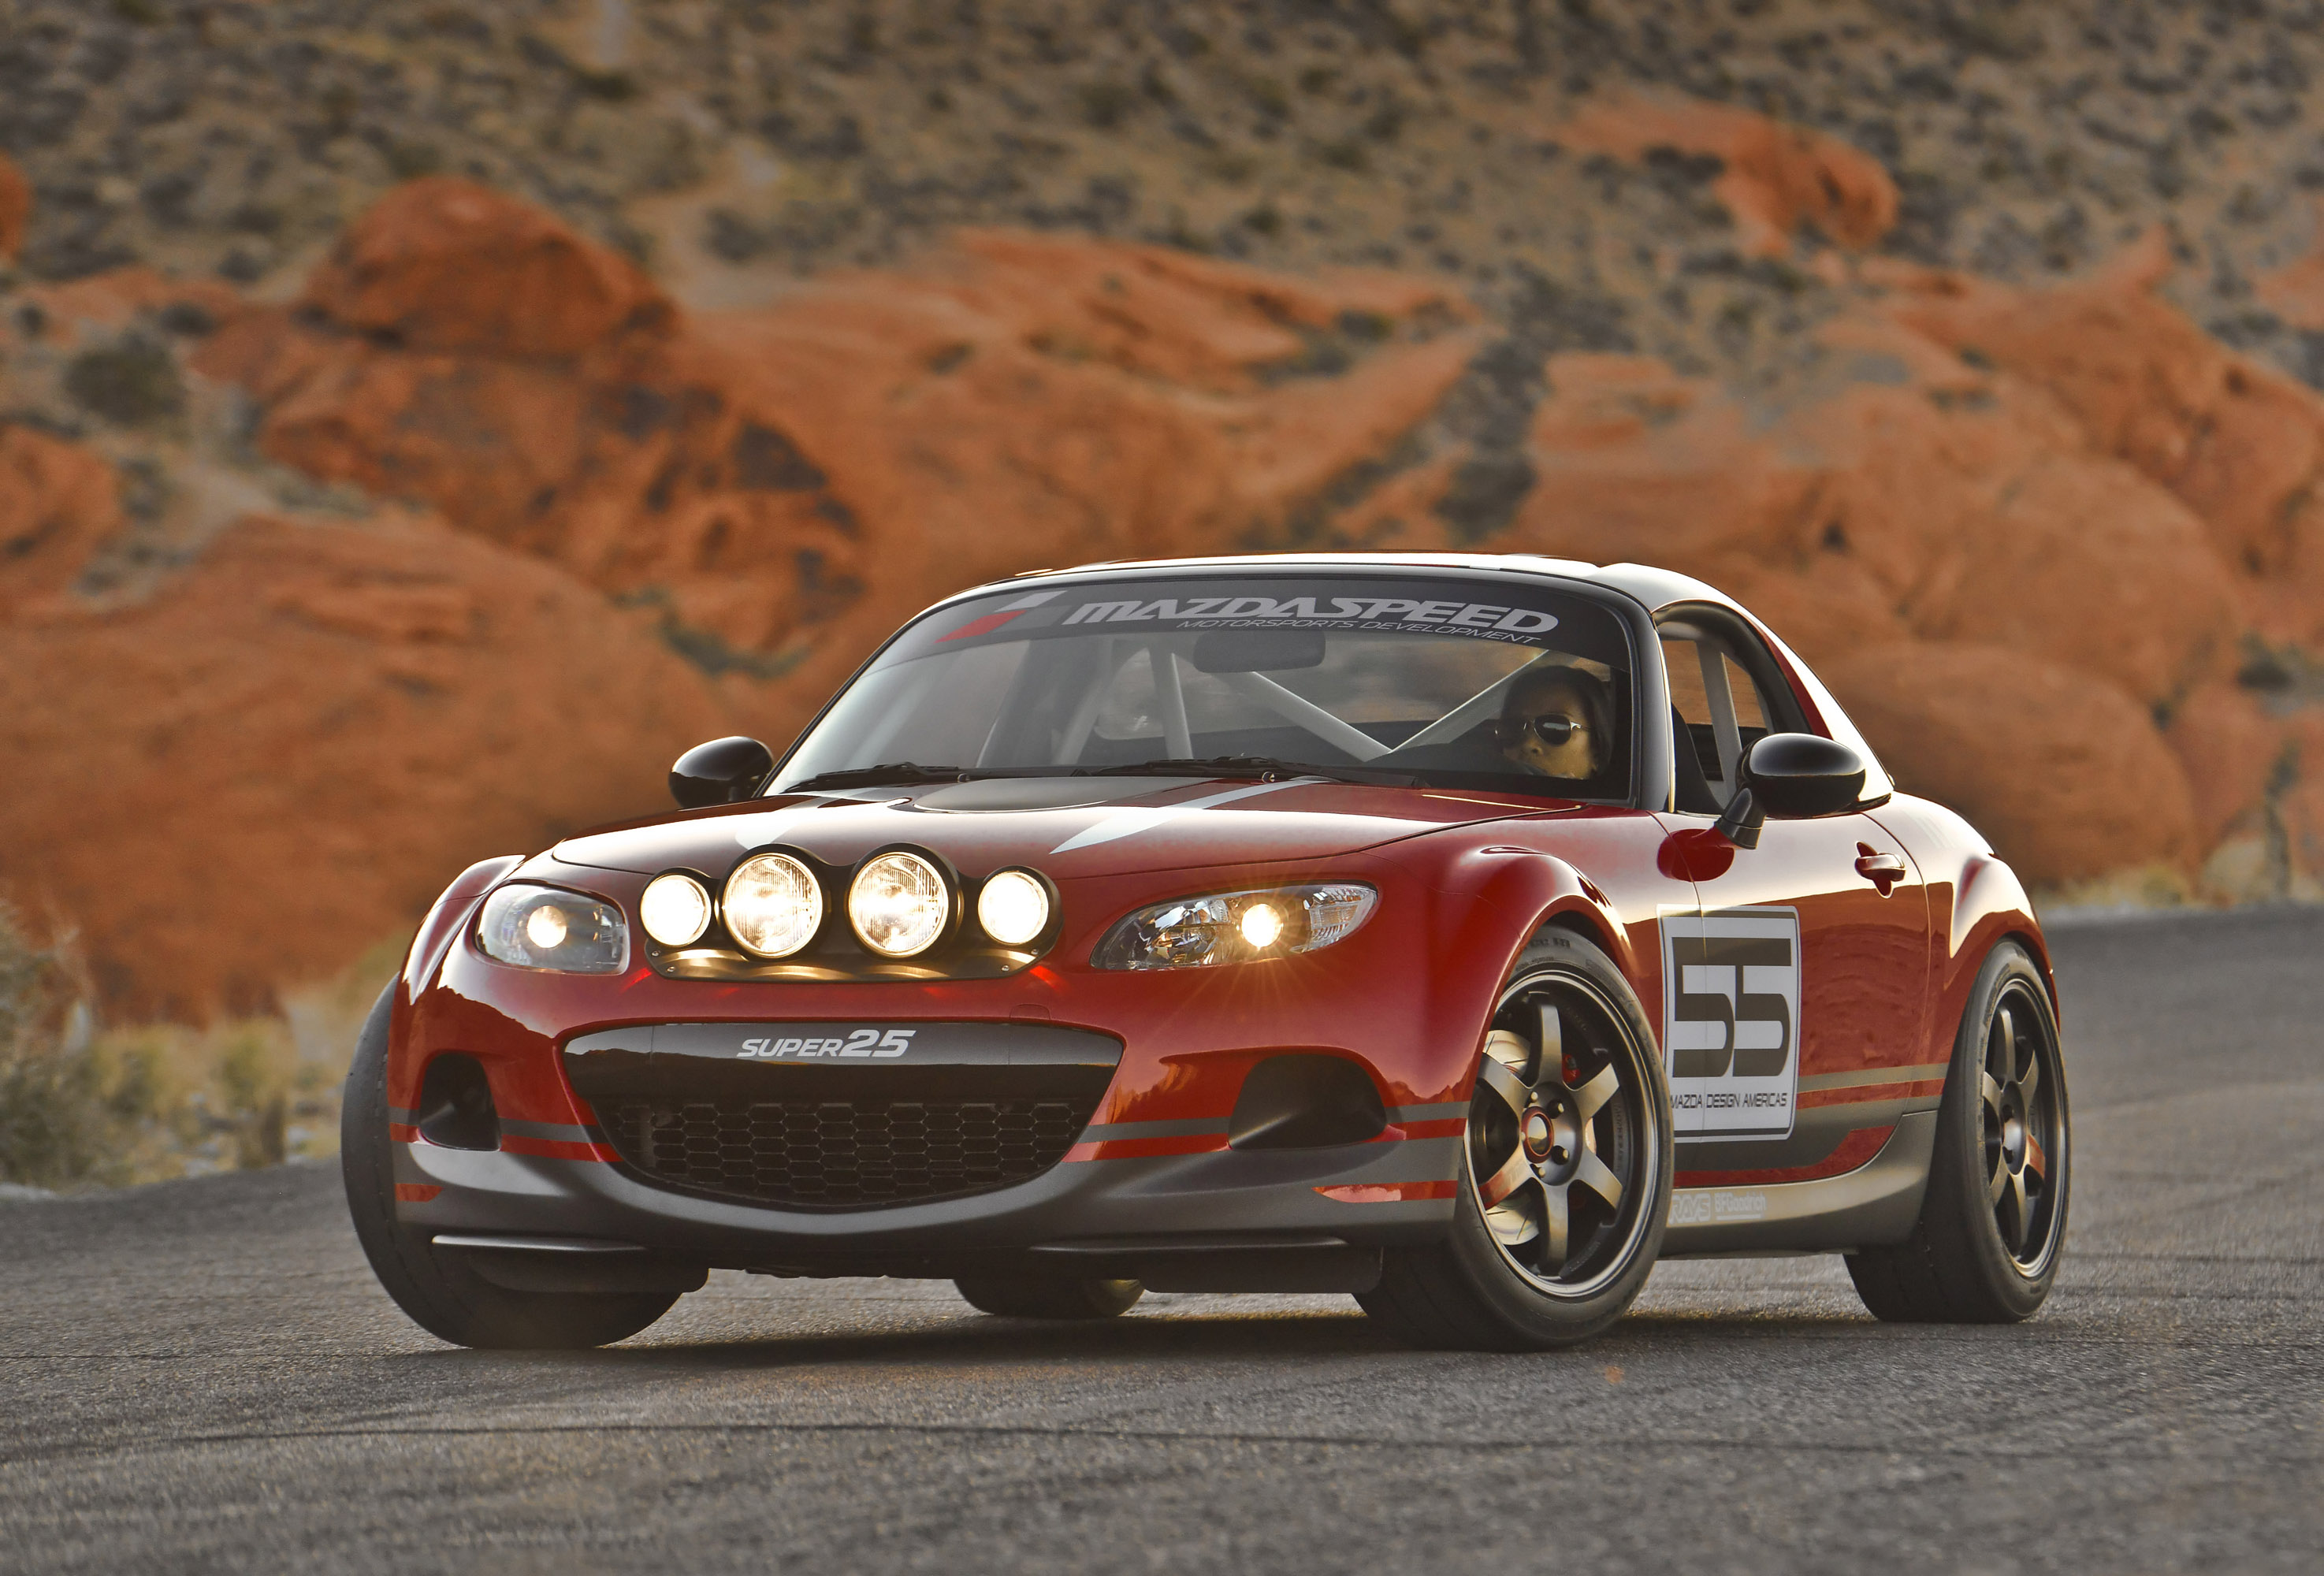 2013 Mazda MX-5 Super 25 Concept - HD Pictures ...